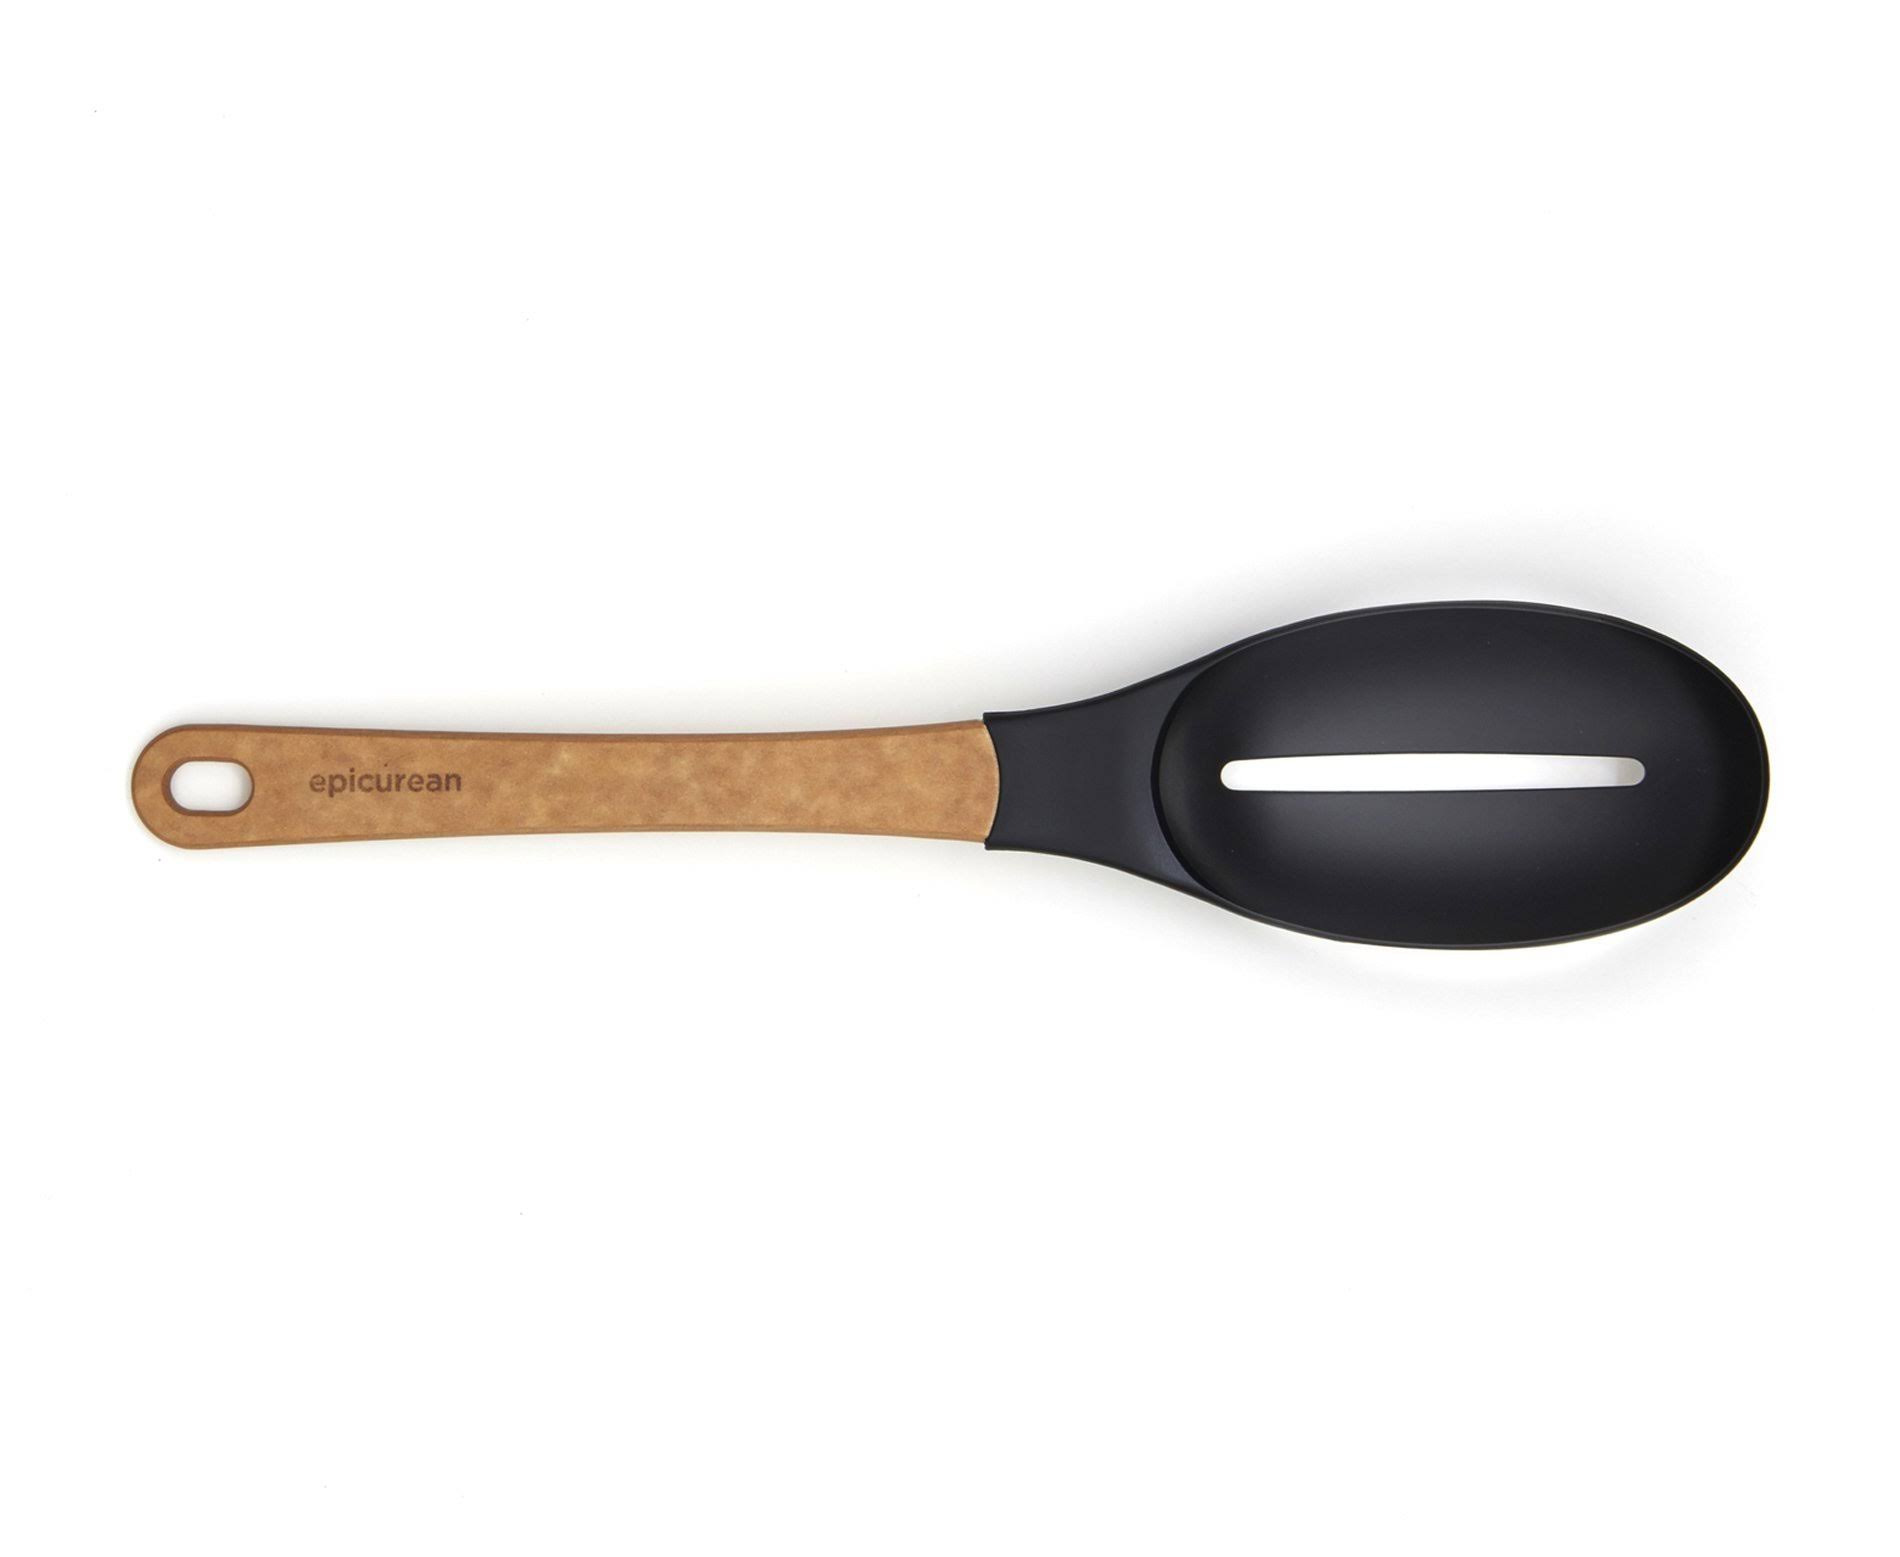 Epicurean Gourmet Series Utensils - Slotted Spoon